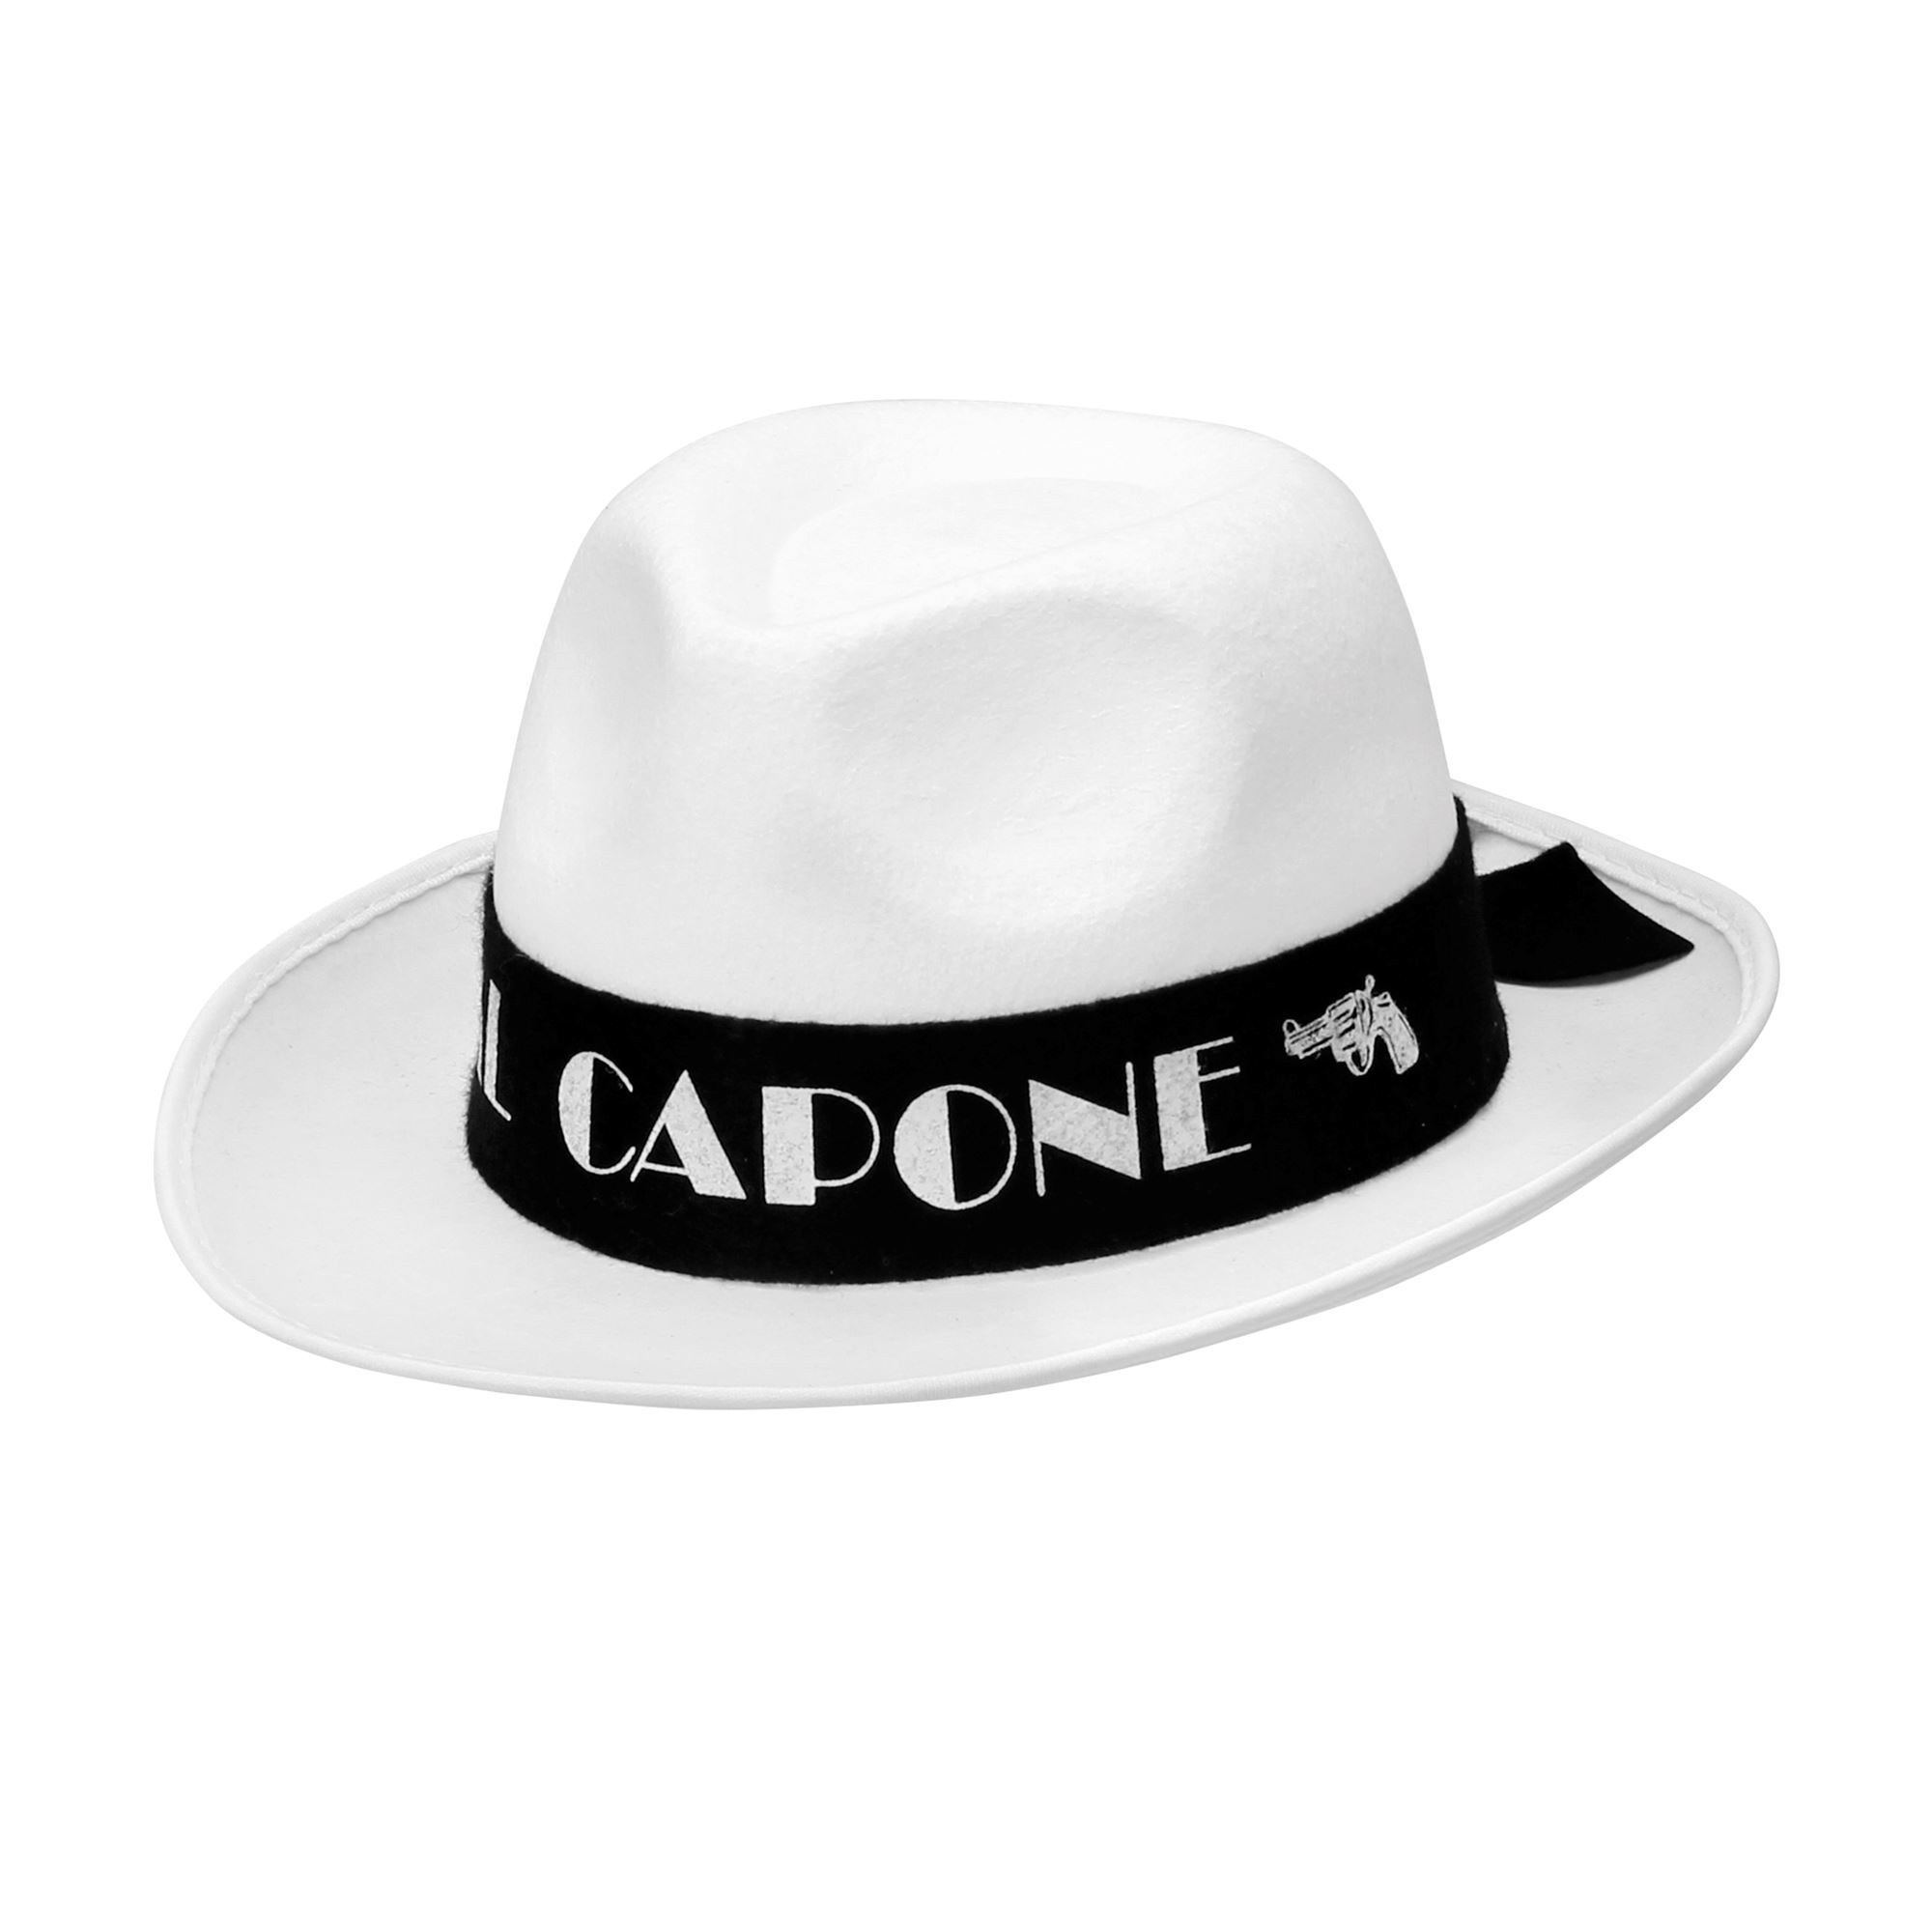 Gangster hoed in het wit met opdruk al capone voor een echte feest gangster